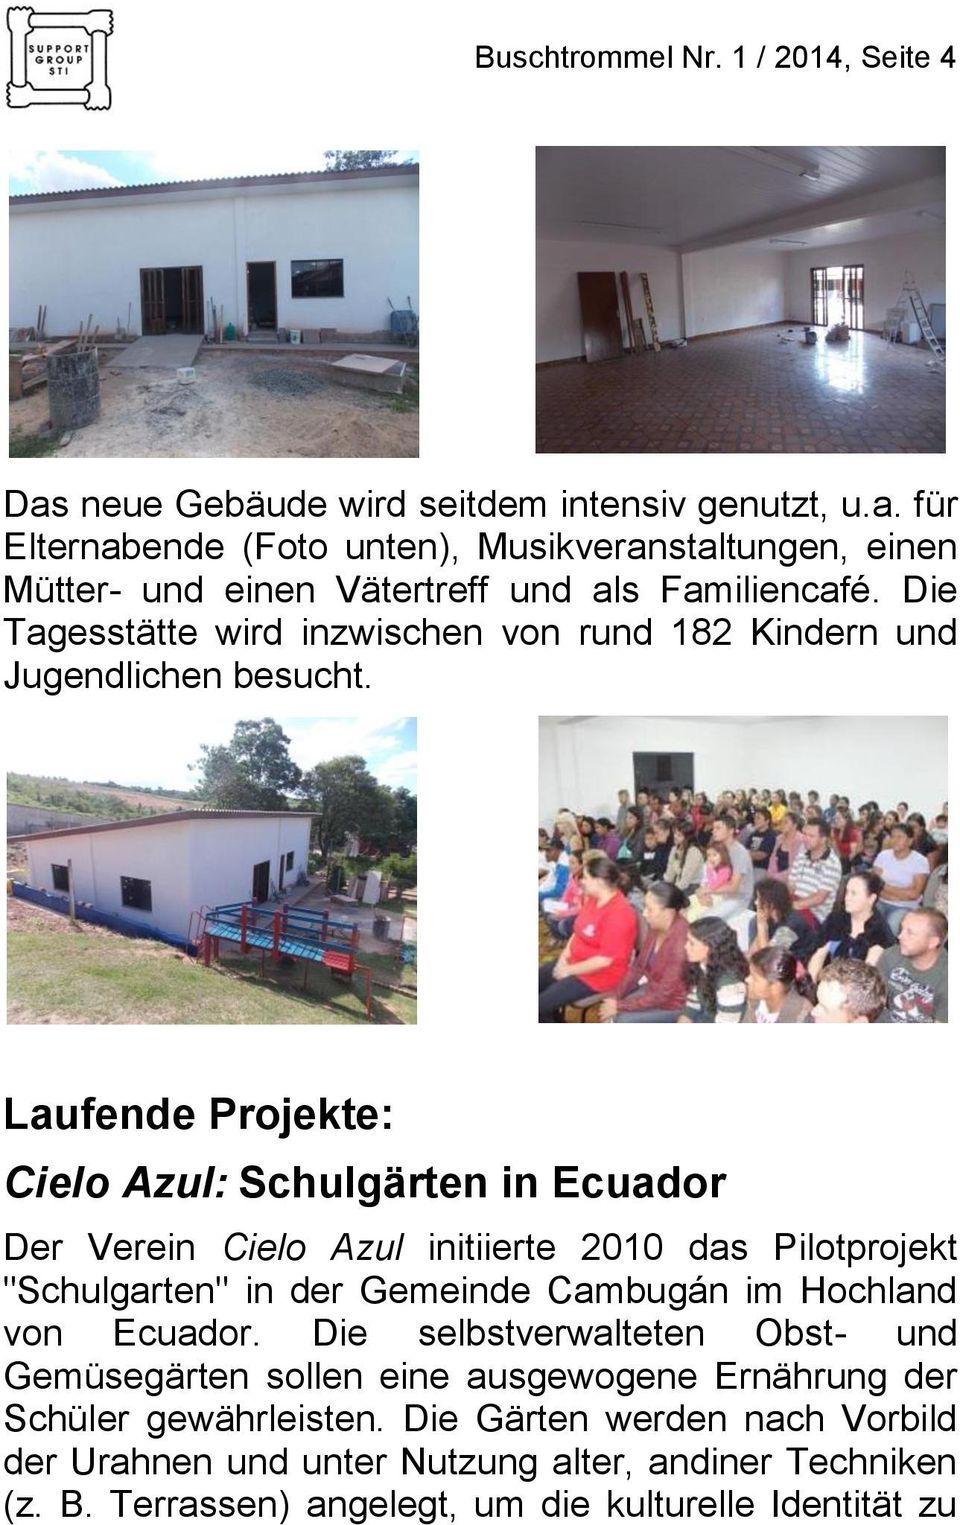 Laufende Projekte: Cielo Azul: Schulgärten in Ecuador Der Verein Cielo Azul initiierte 2010 das Pilotprojekt "Schulgarten" in der Gemeinde Cambugán im Hochland von Ecuador.